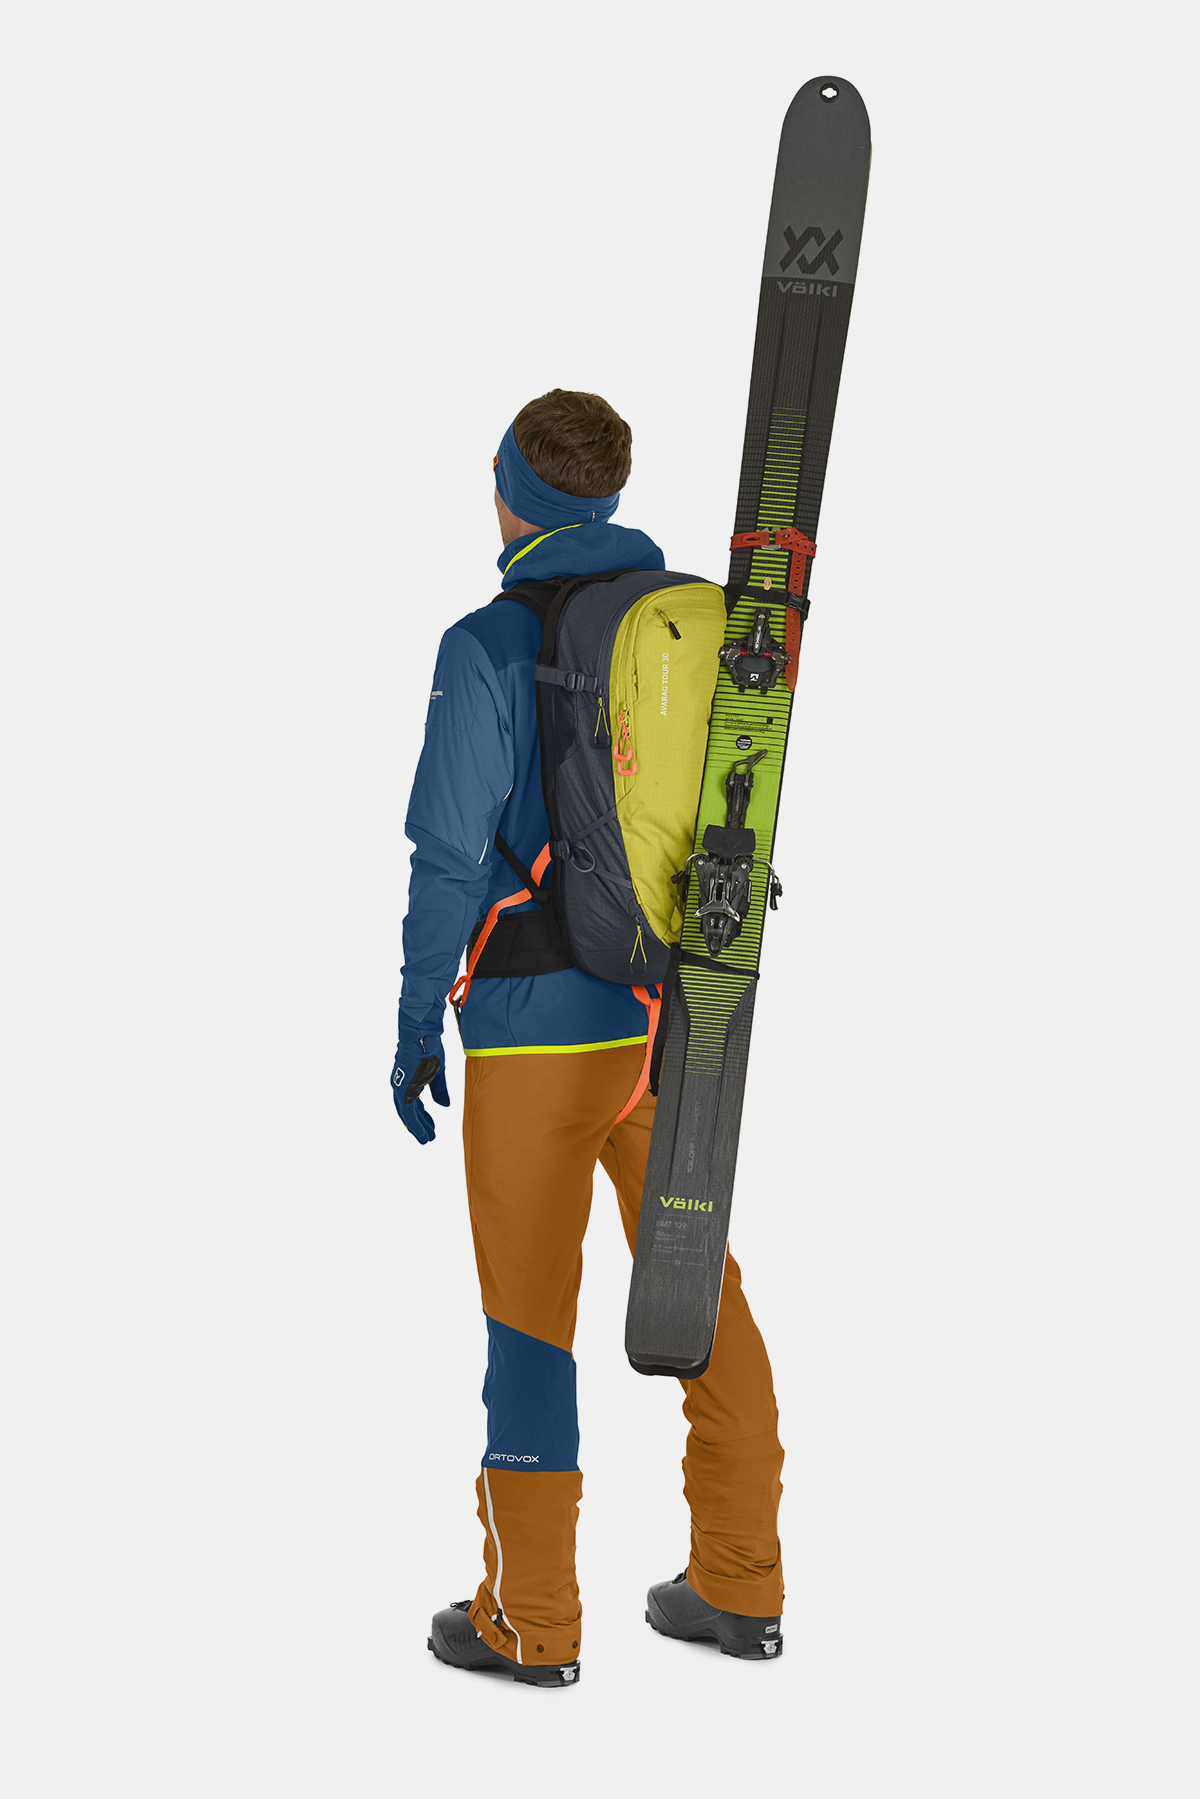 Tbest poignée de snowboard légère, sangle de snowboard, pour la fixation de  ski de snowboard 